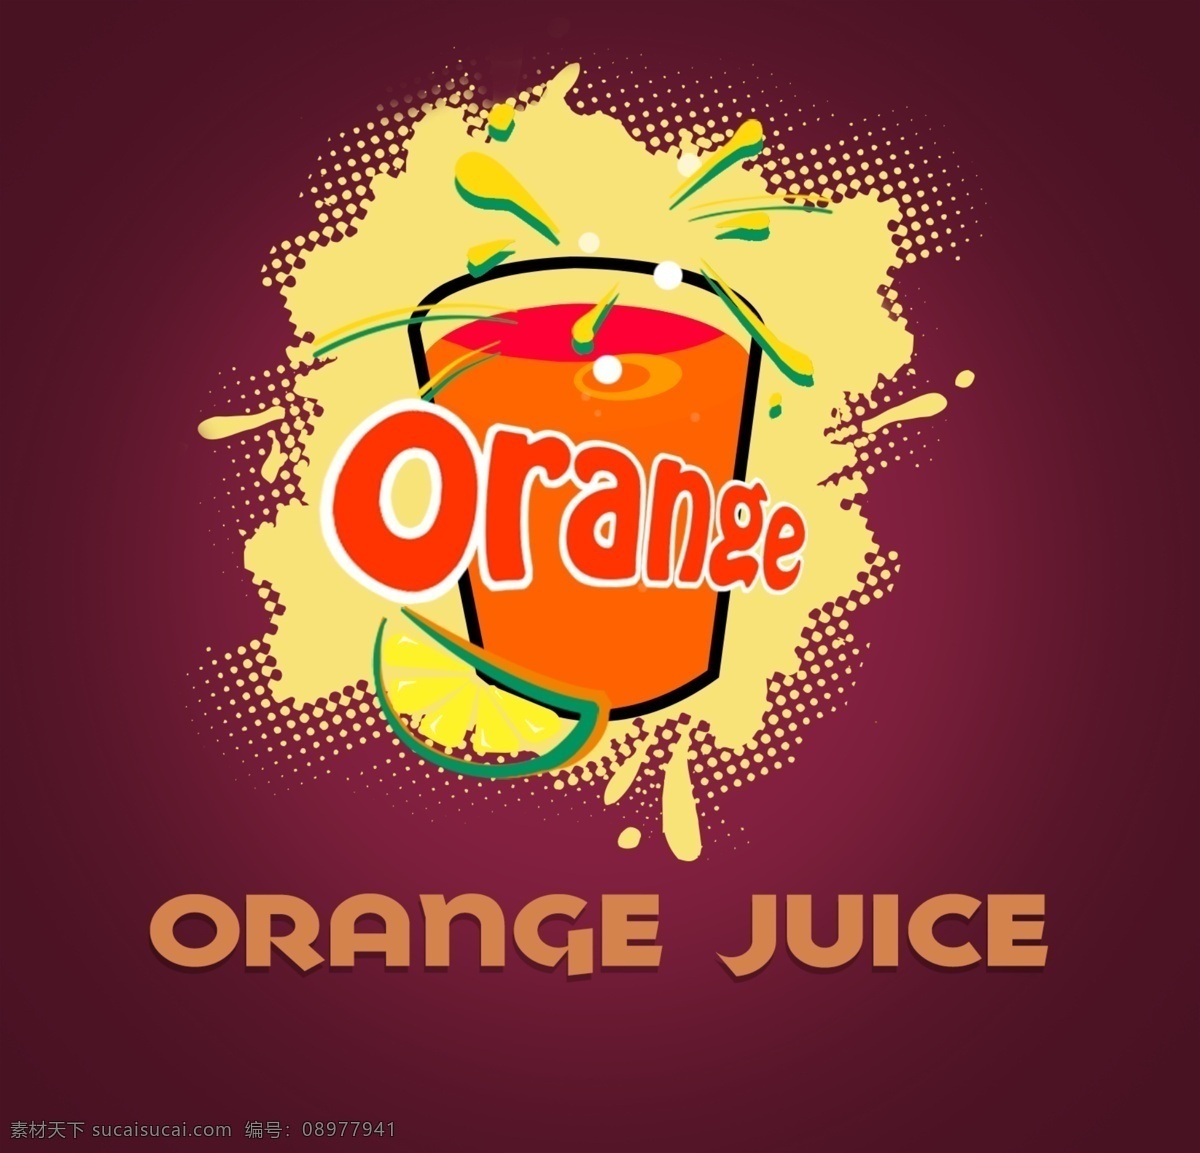 果汁 图标 logo 果汁图标 手绘 简约 果汁饮料图标 橙汁标志